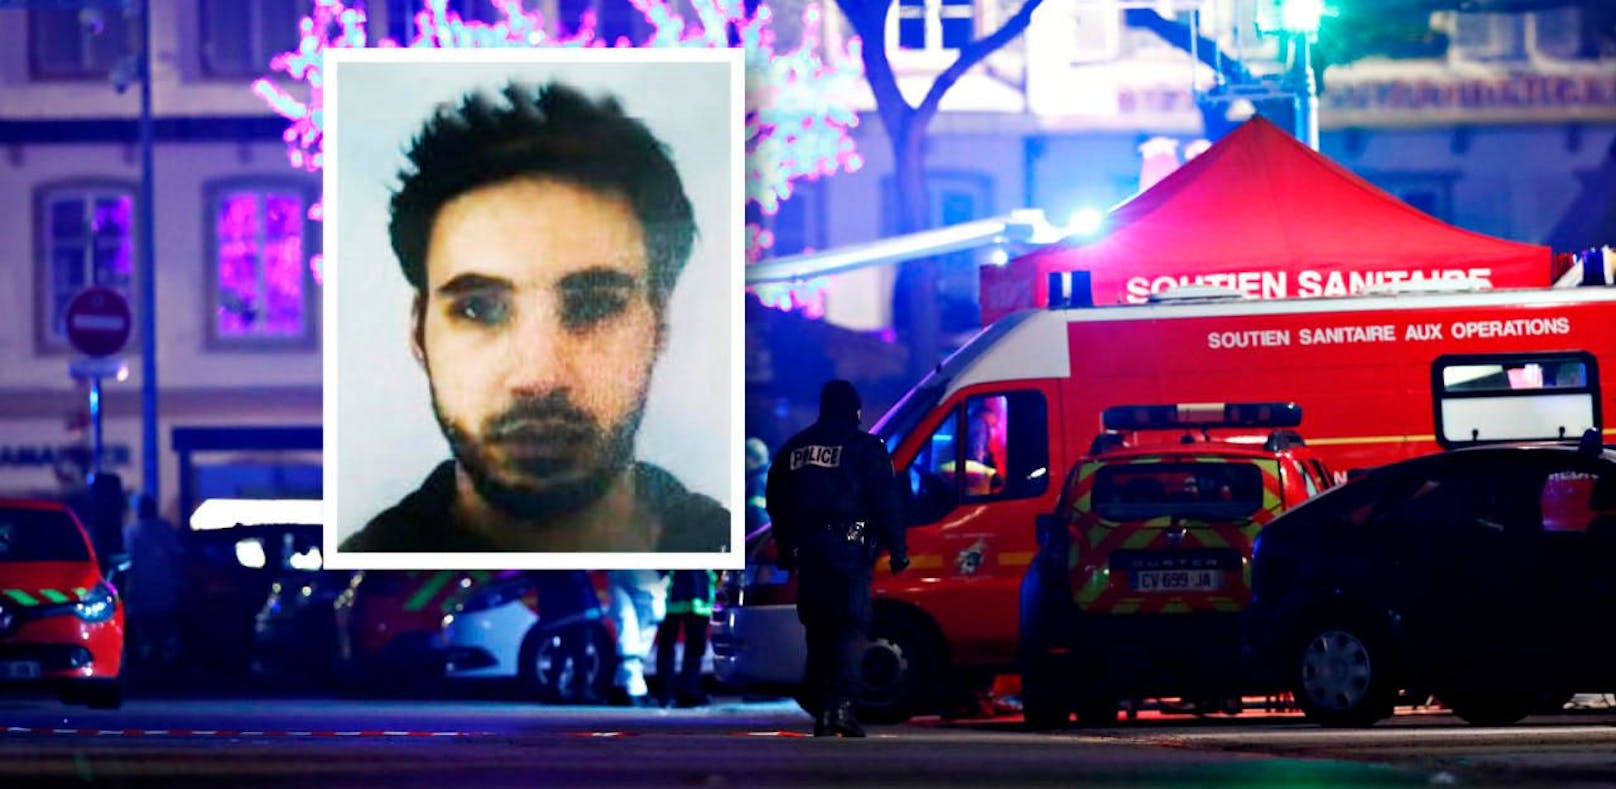 Polizei hat Straßburg-Attentäter erschossen